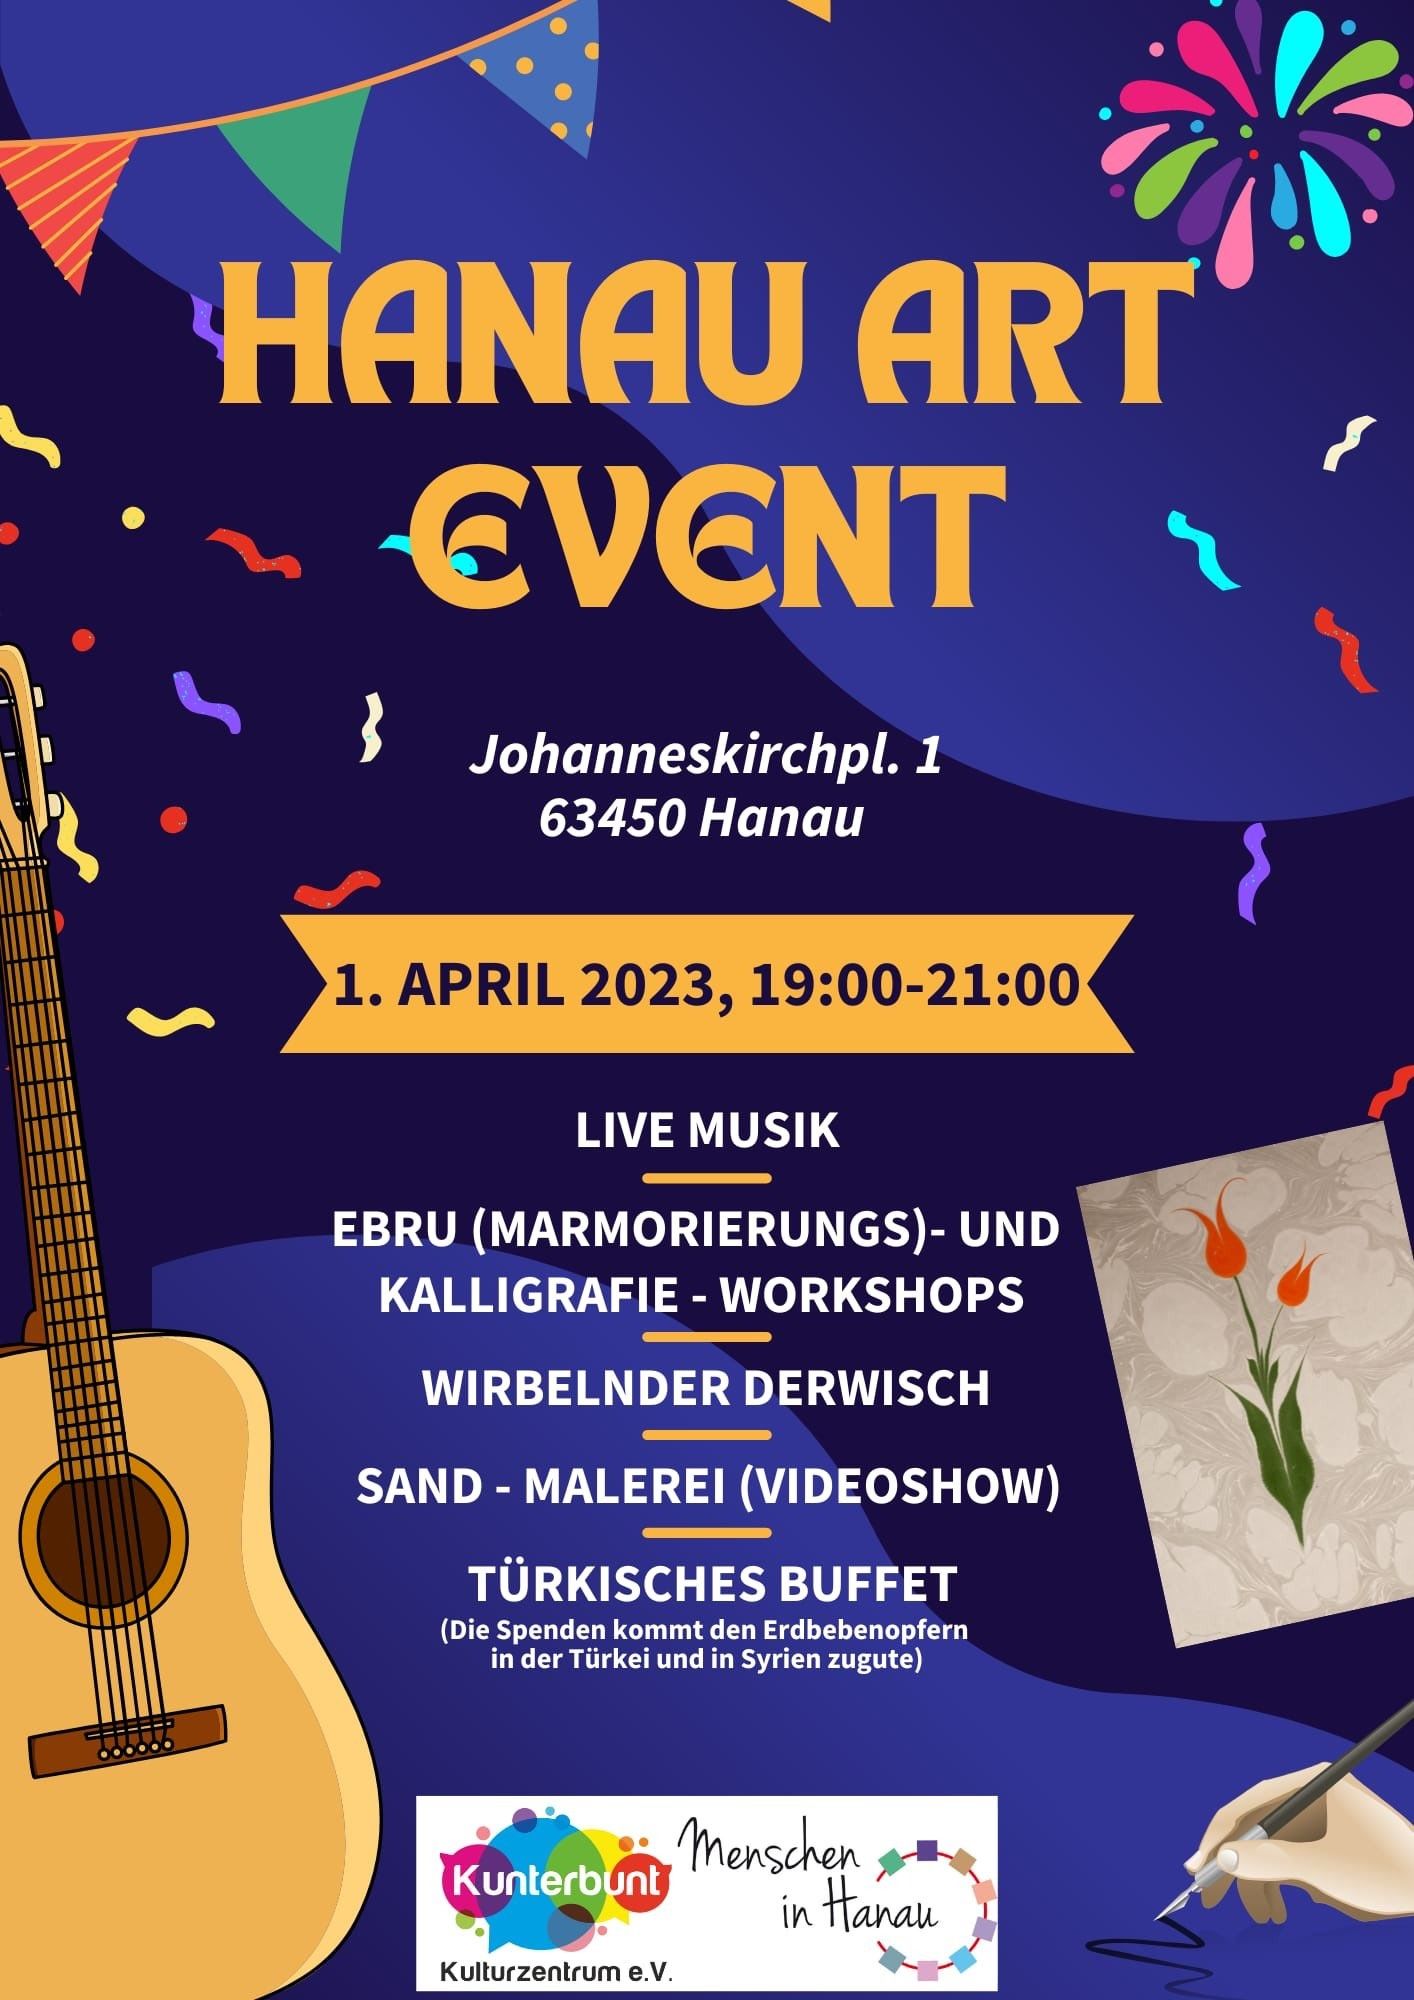 Plakat für das Hanauer Art Event. Das Programm für den Abend ist auf hellblauem Hintergrund gelistet.